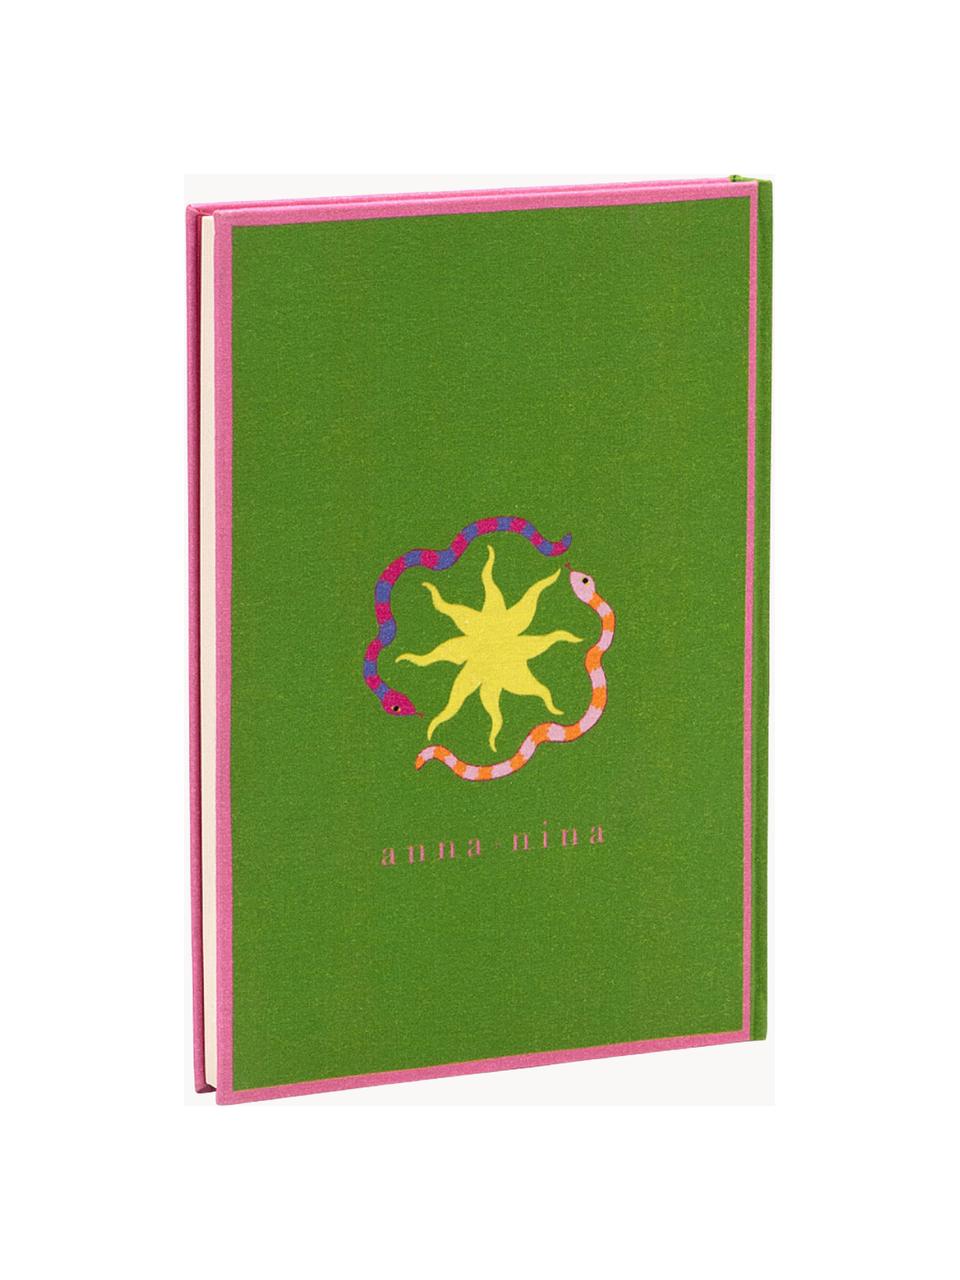 Zápisník Lucid Dreams, Bavlna, papír 80 g/m², barevný papír, karton, Zelená, více barev, Š 16 cm, V 23 cm